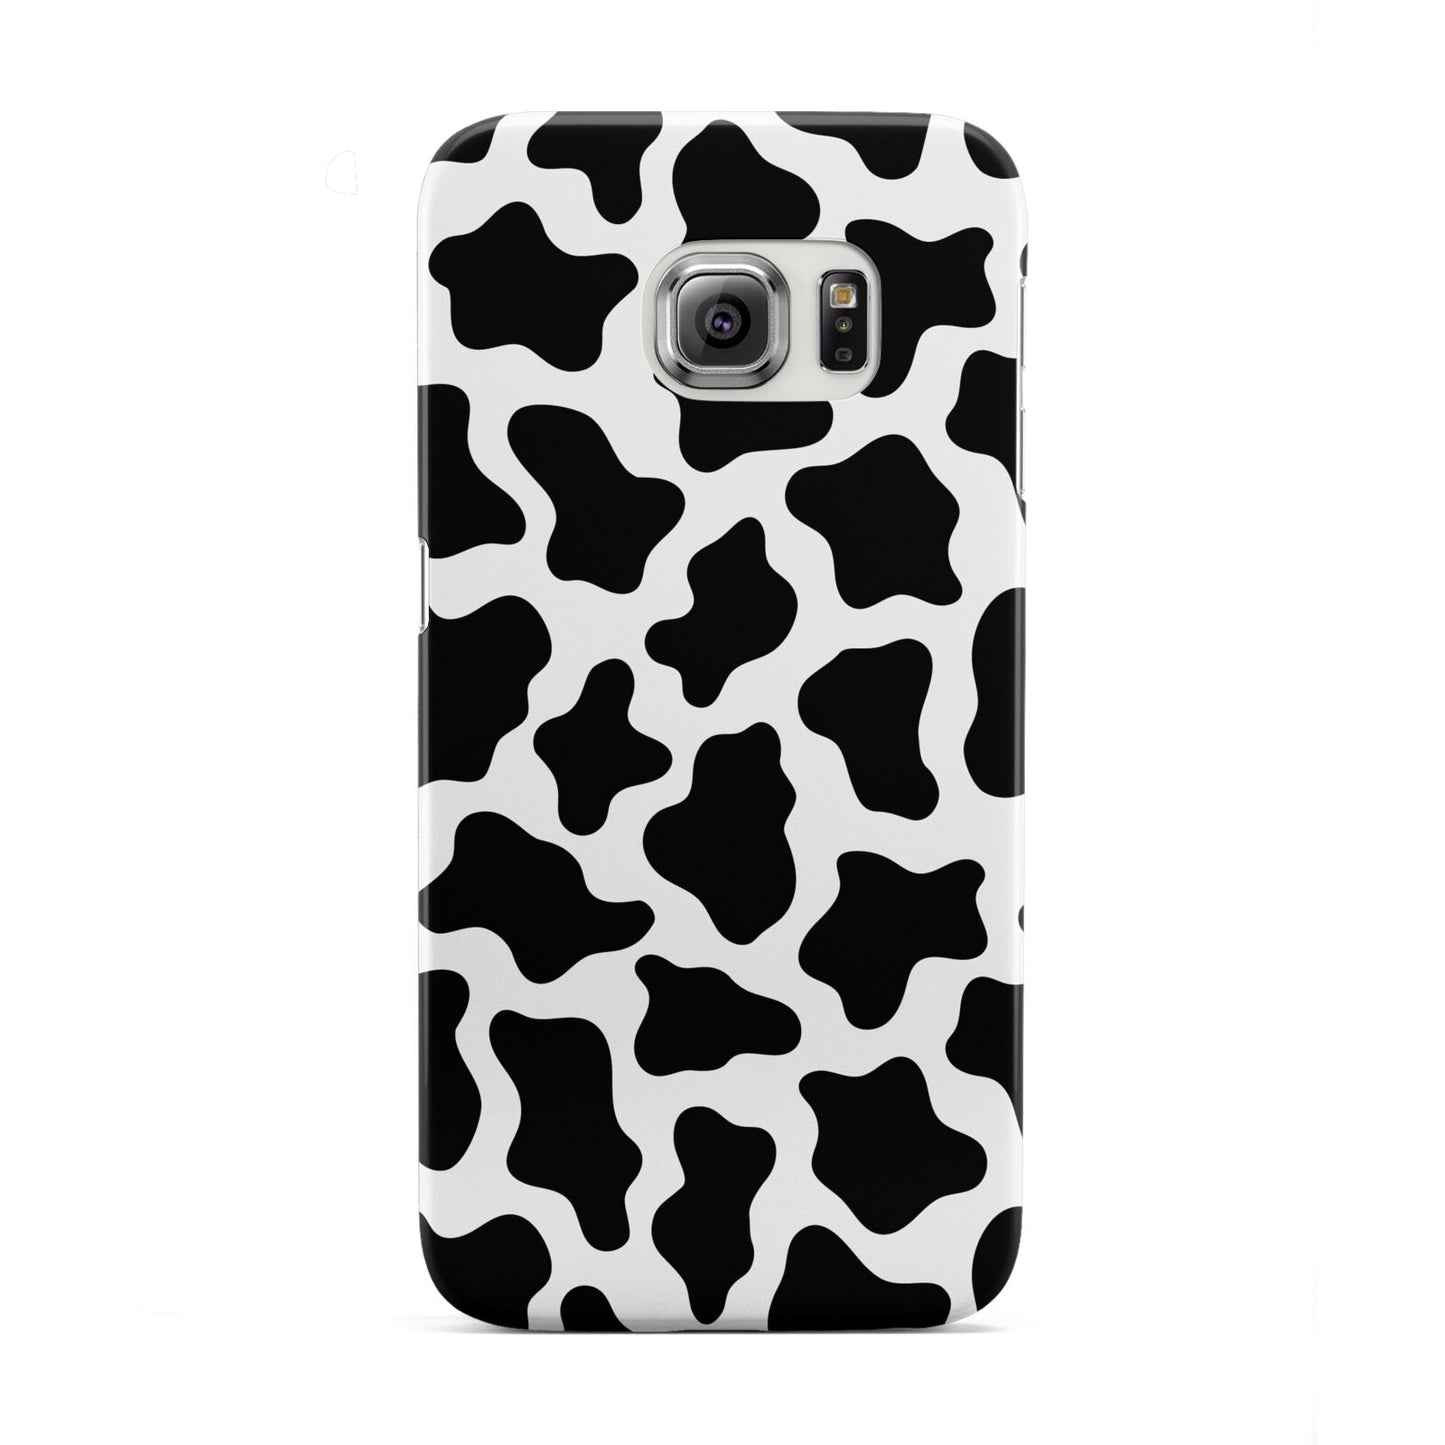 Cow Print Samsung Galaxy S6 Edge Case